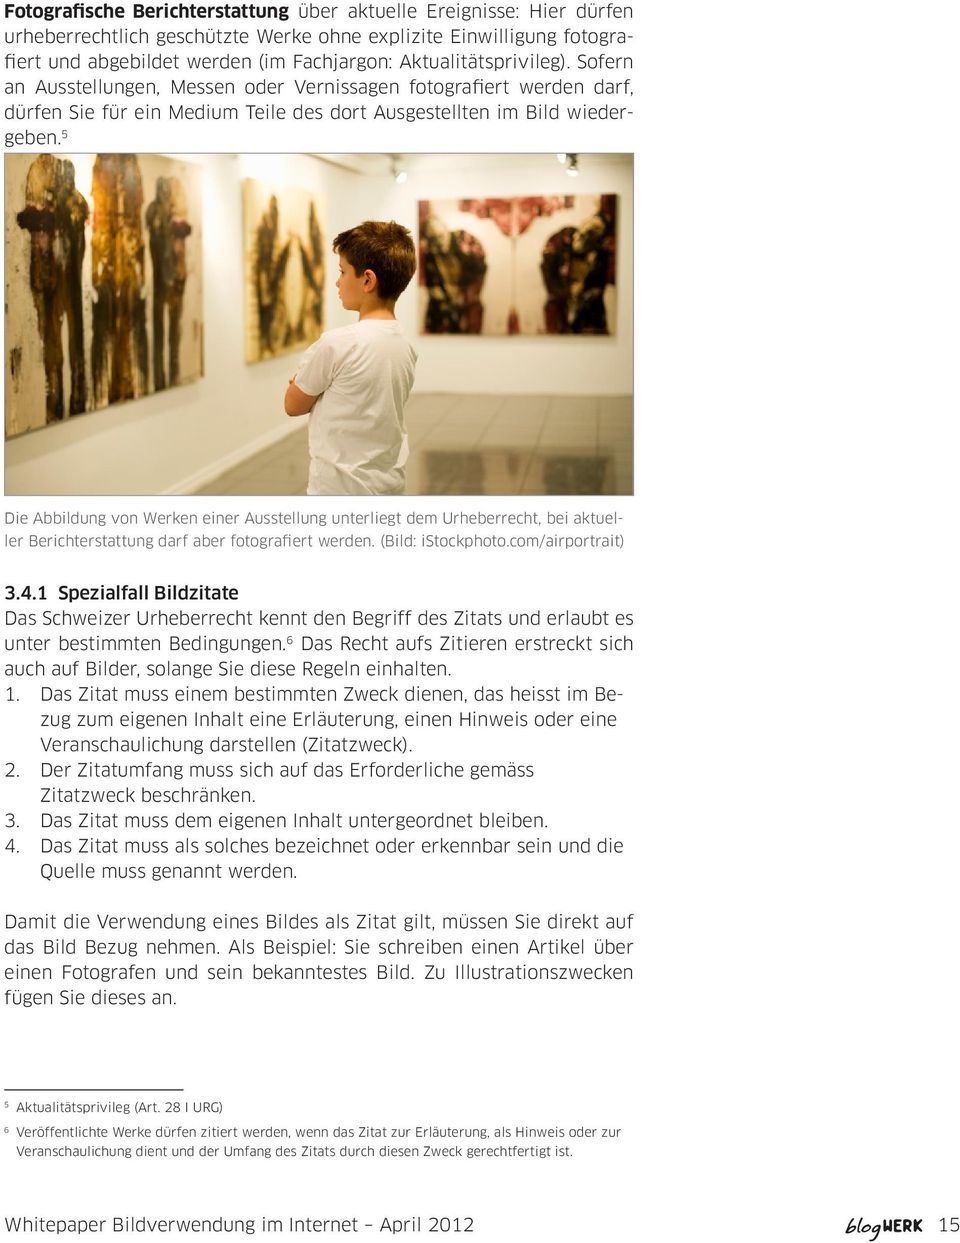 5 Die Abbildung von Werken einer Ausstellung unterliegt dem Urheberrecht, bei aktueller Berichterstattung darf aber fotografiert werden. (Bild: istockphoto.com/airportrait) 3.4.